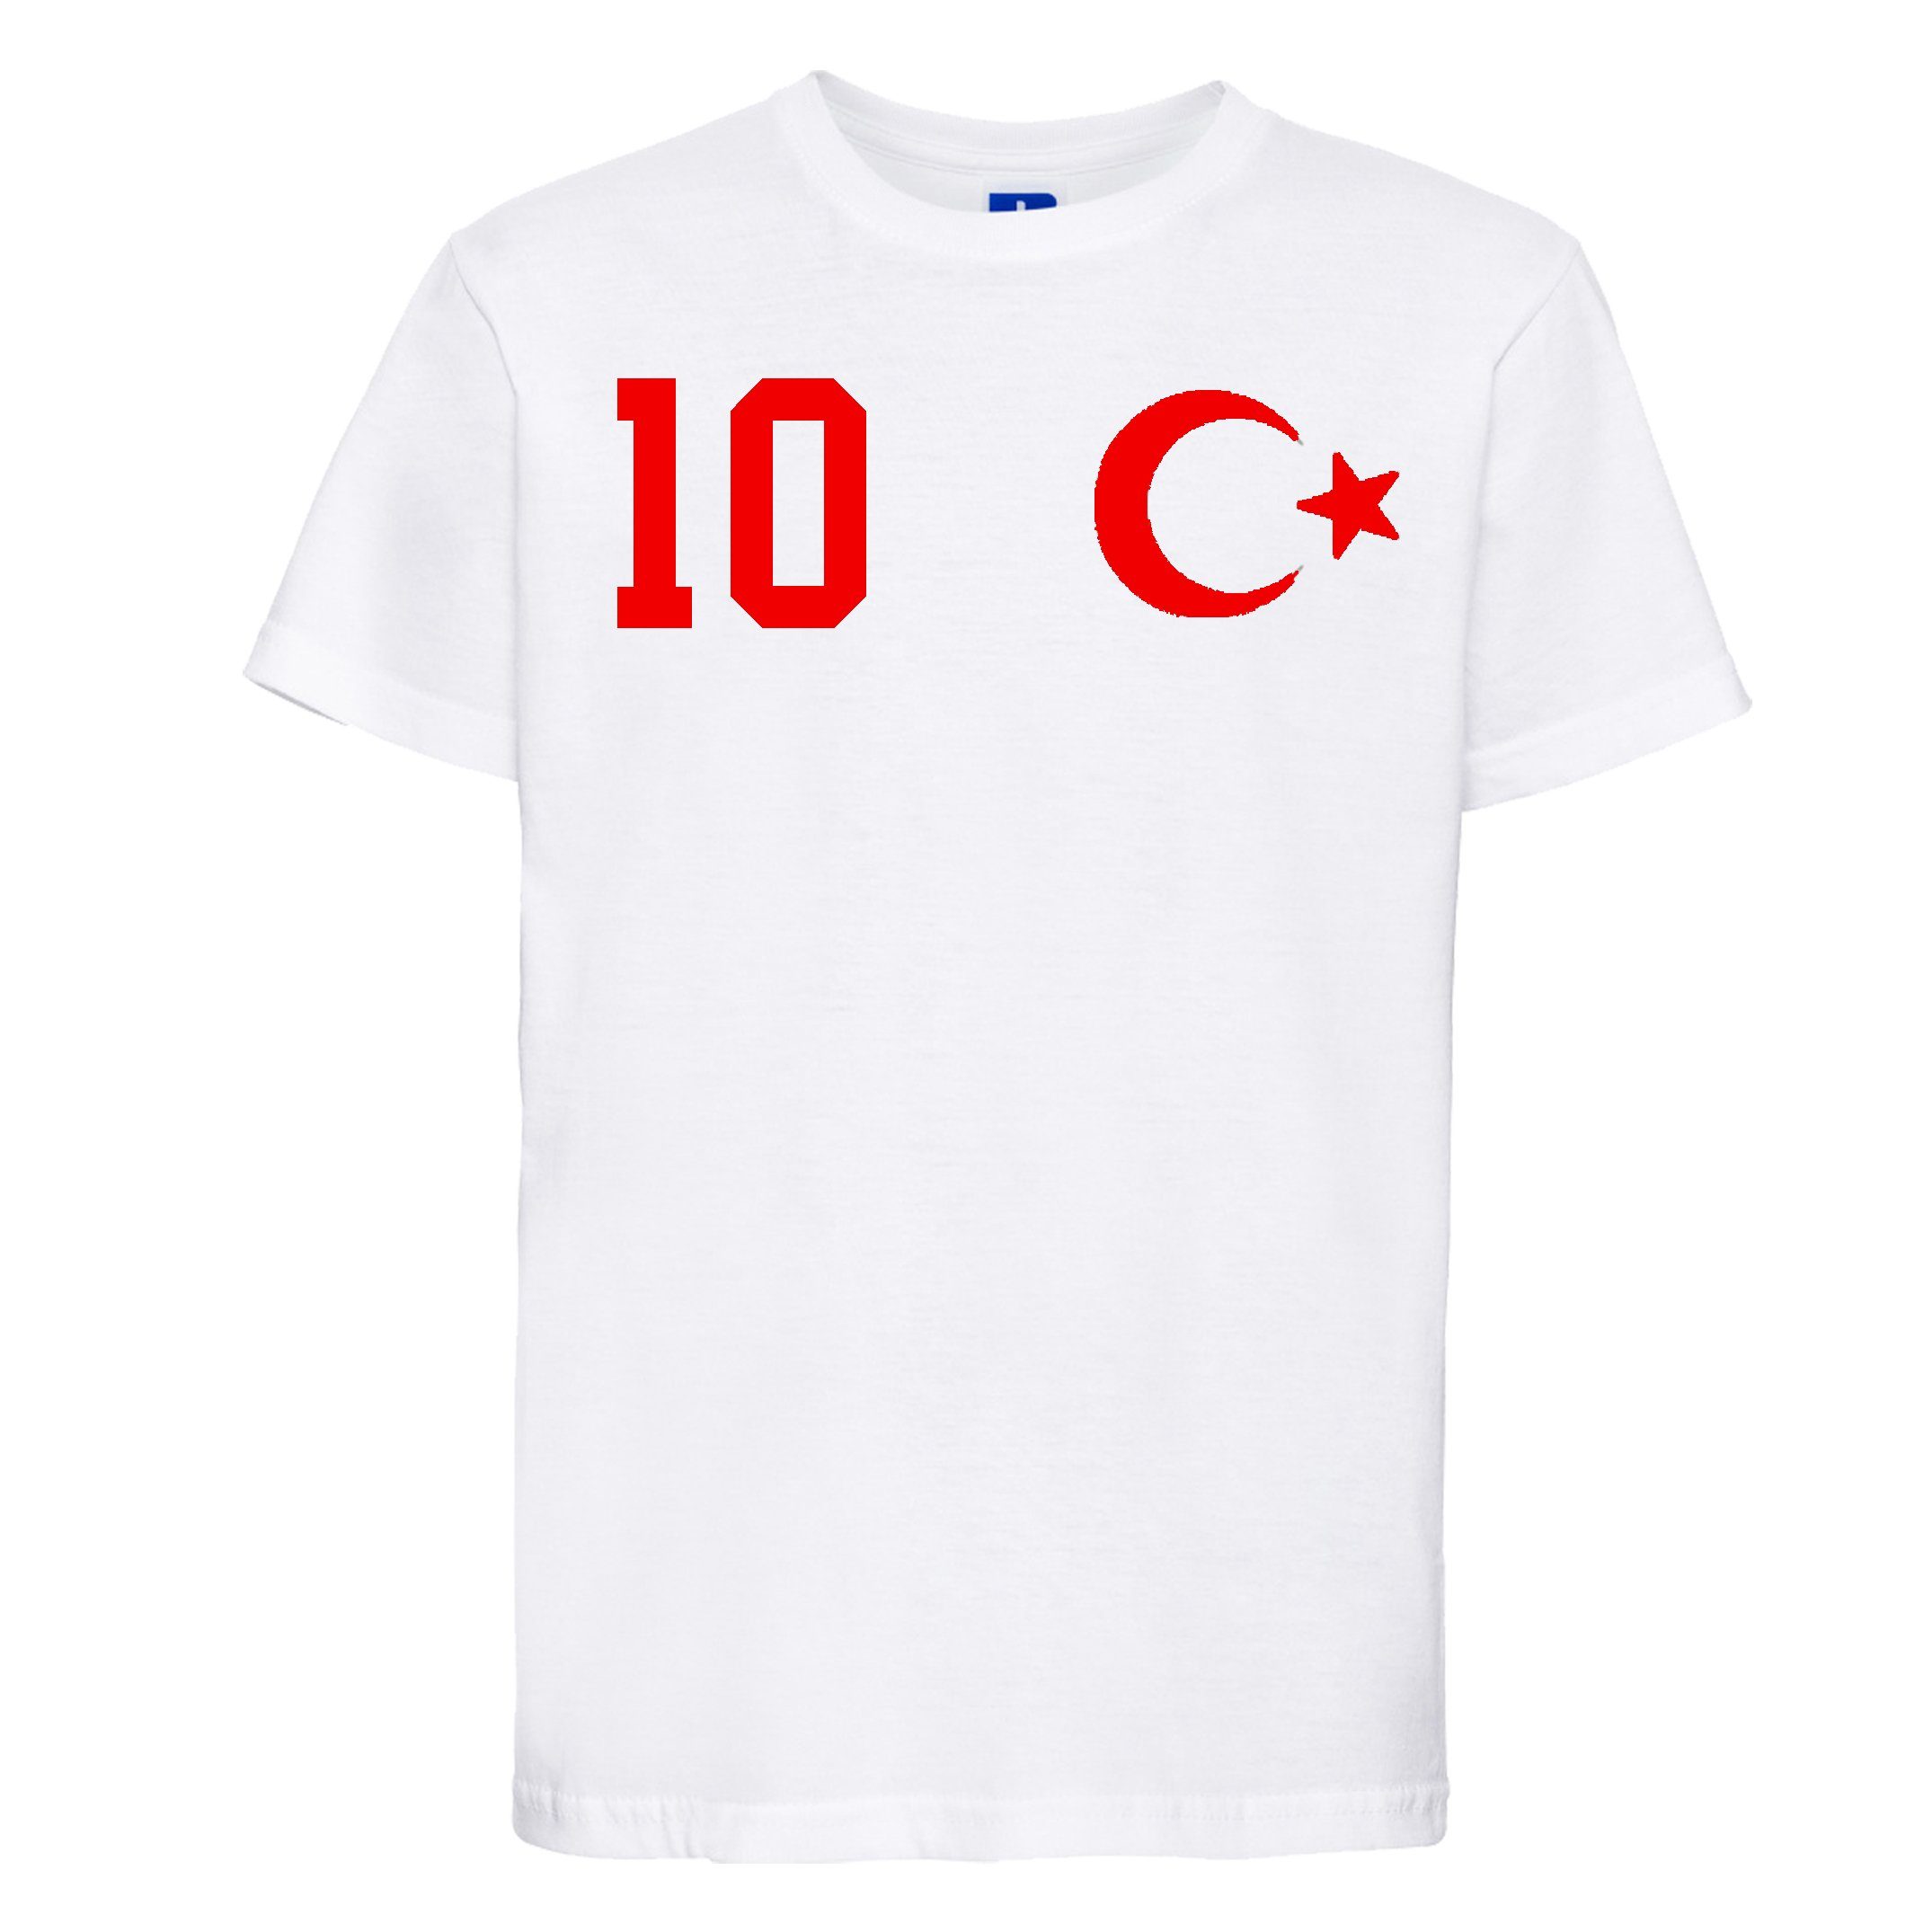 Look im Weiß trendigem Türkei Youth T-Shirt T-Shirt Kinder Trikot mit Designz Fußball Motiv